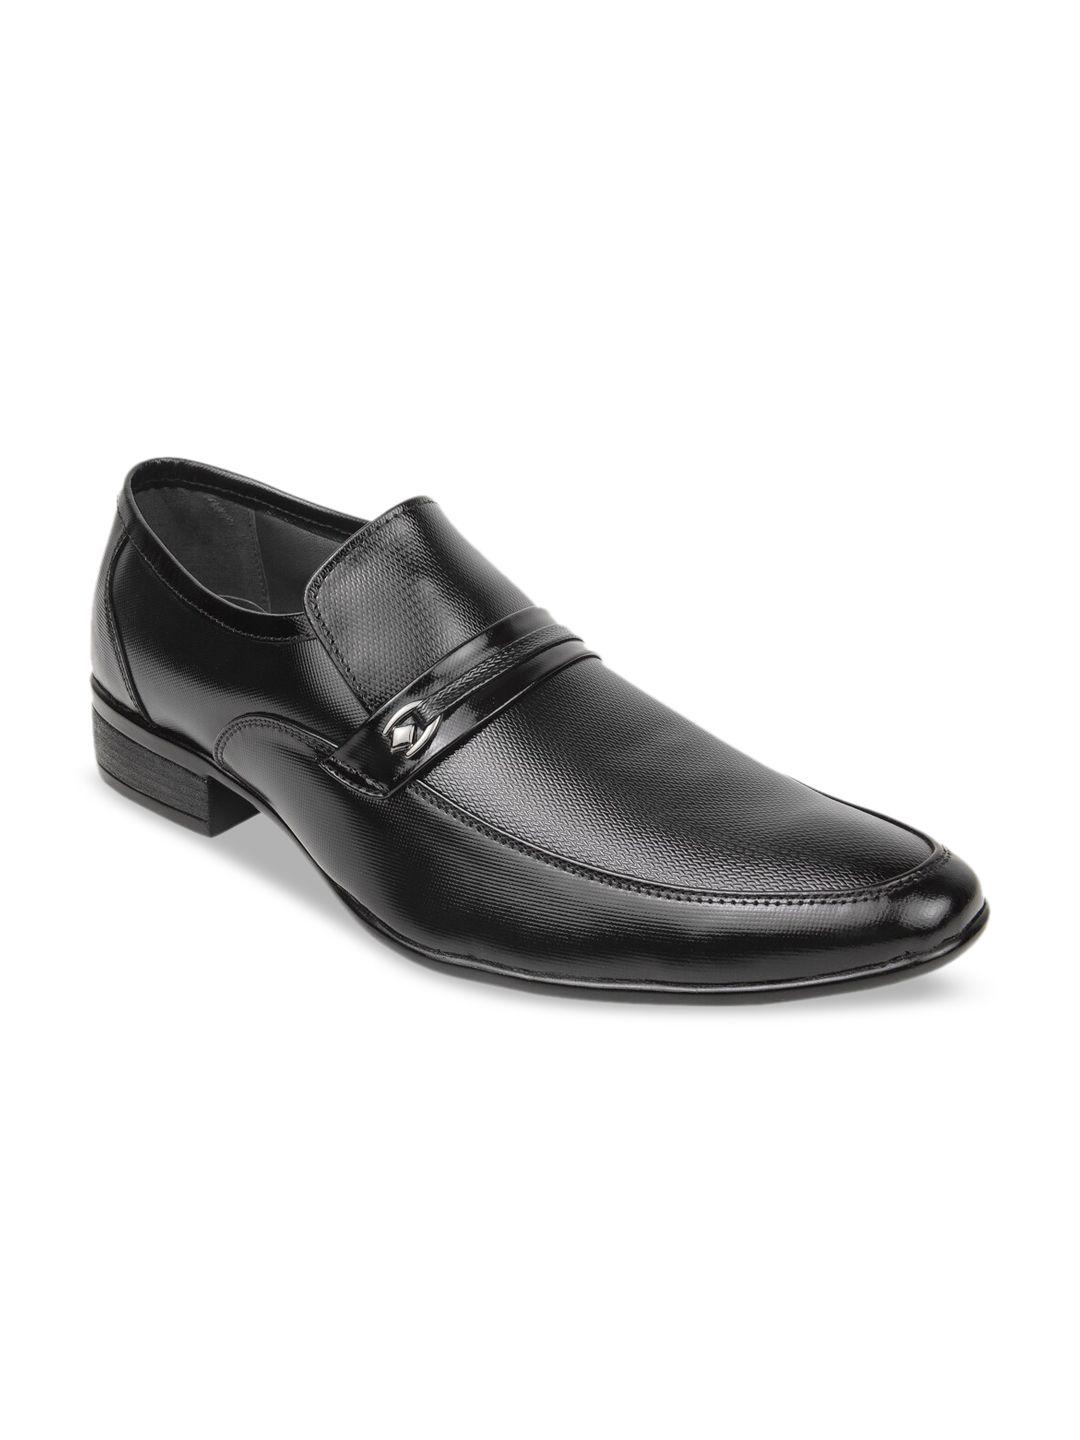 regal-men-black-textured-formal-slip-on-formal-shoes